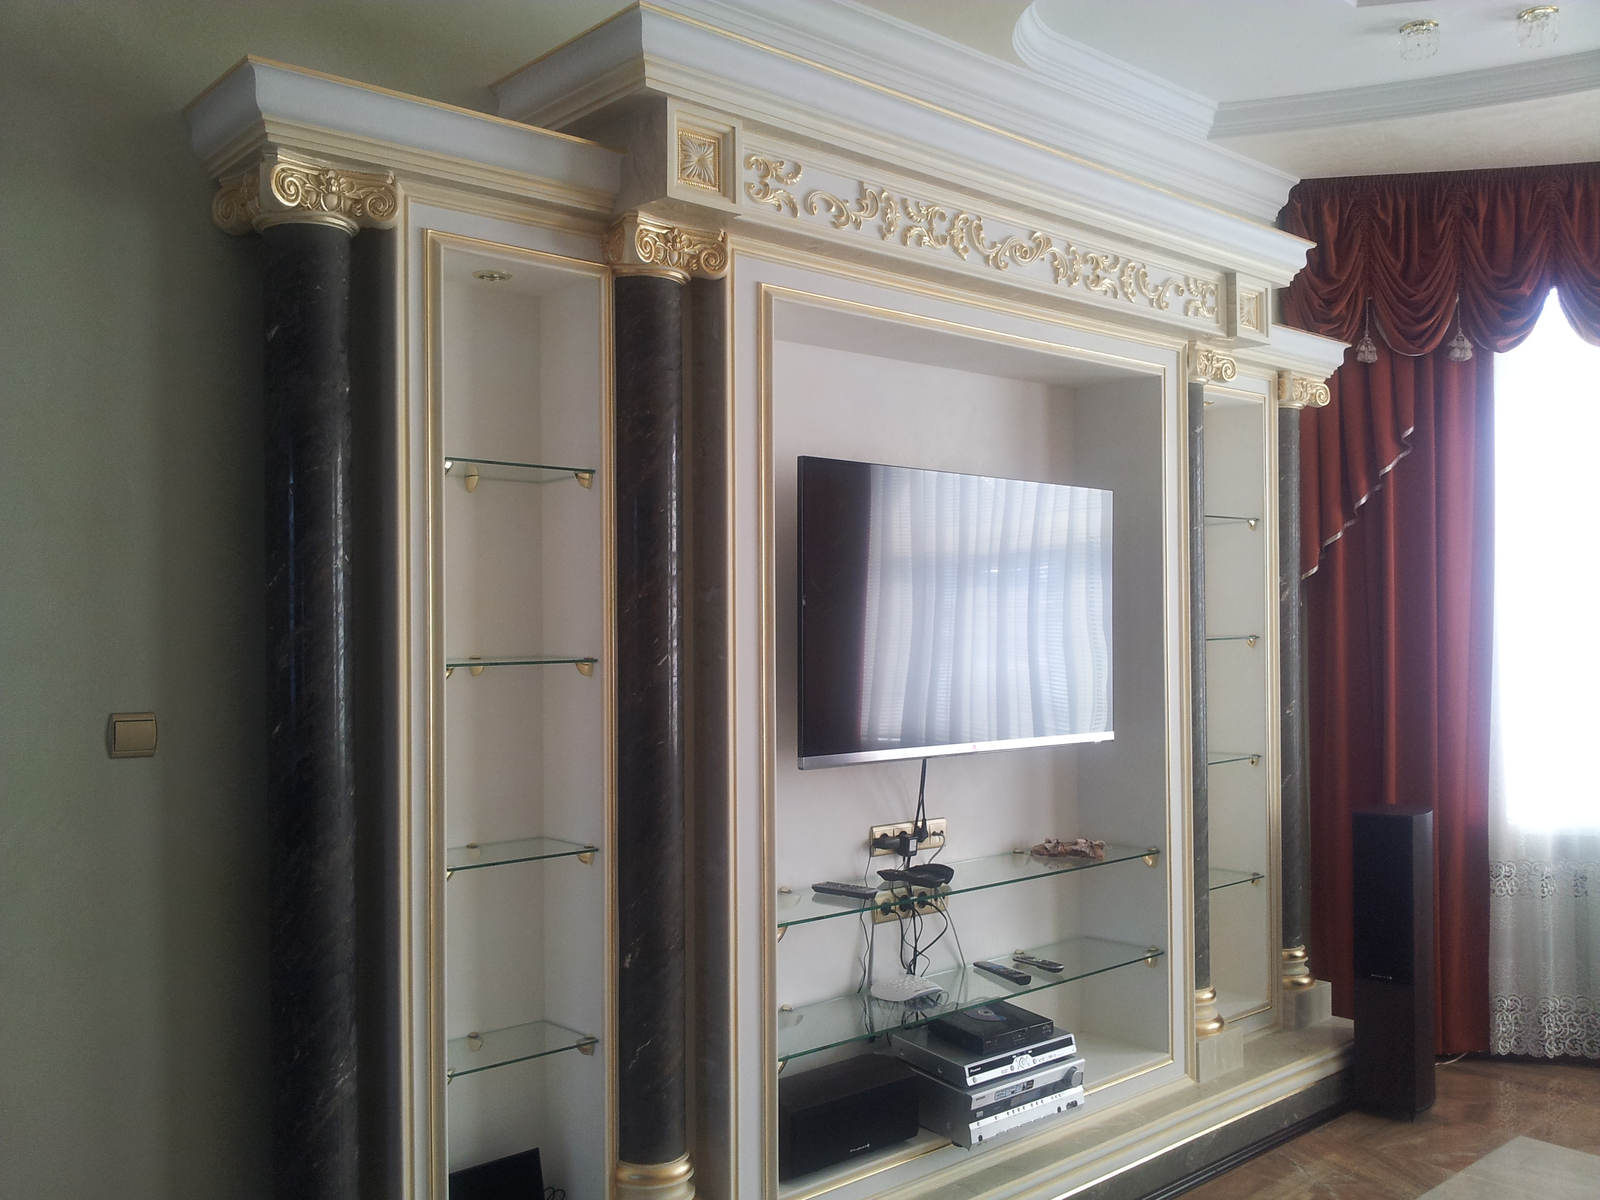 Дизайн интерьера фото ремонта гостиной телевизор на стене, портал с колонами, классика, легкая классика, современная